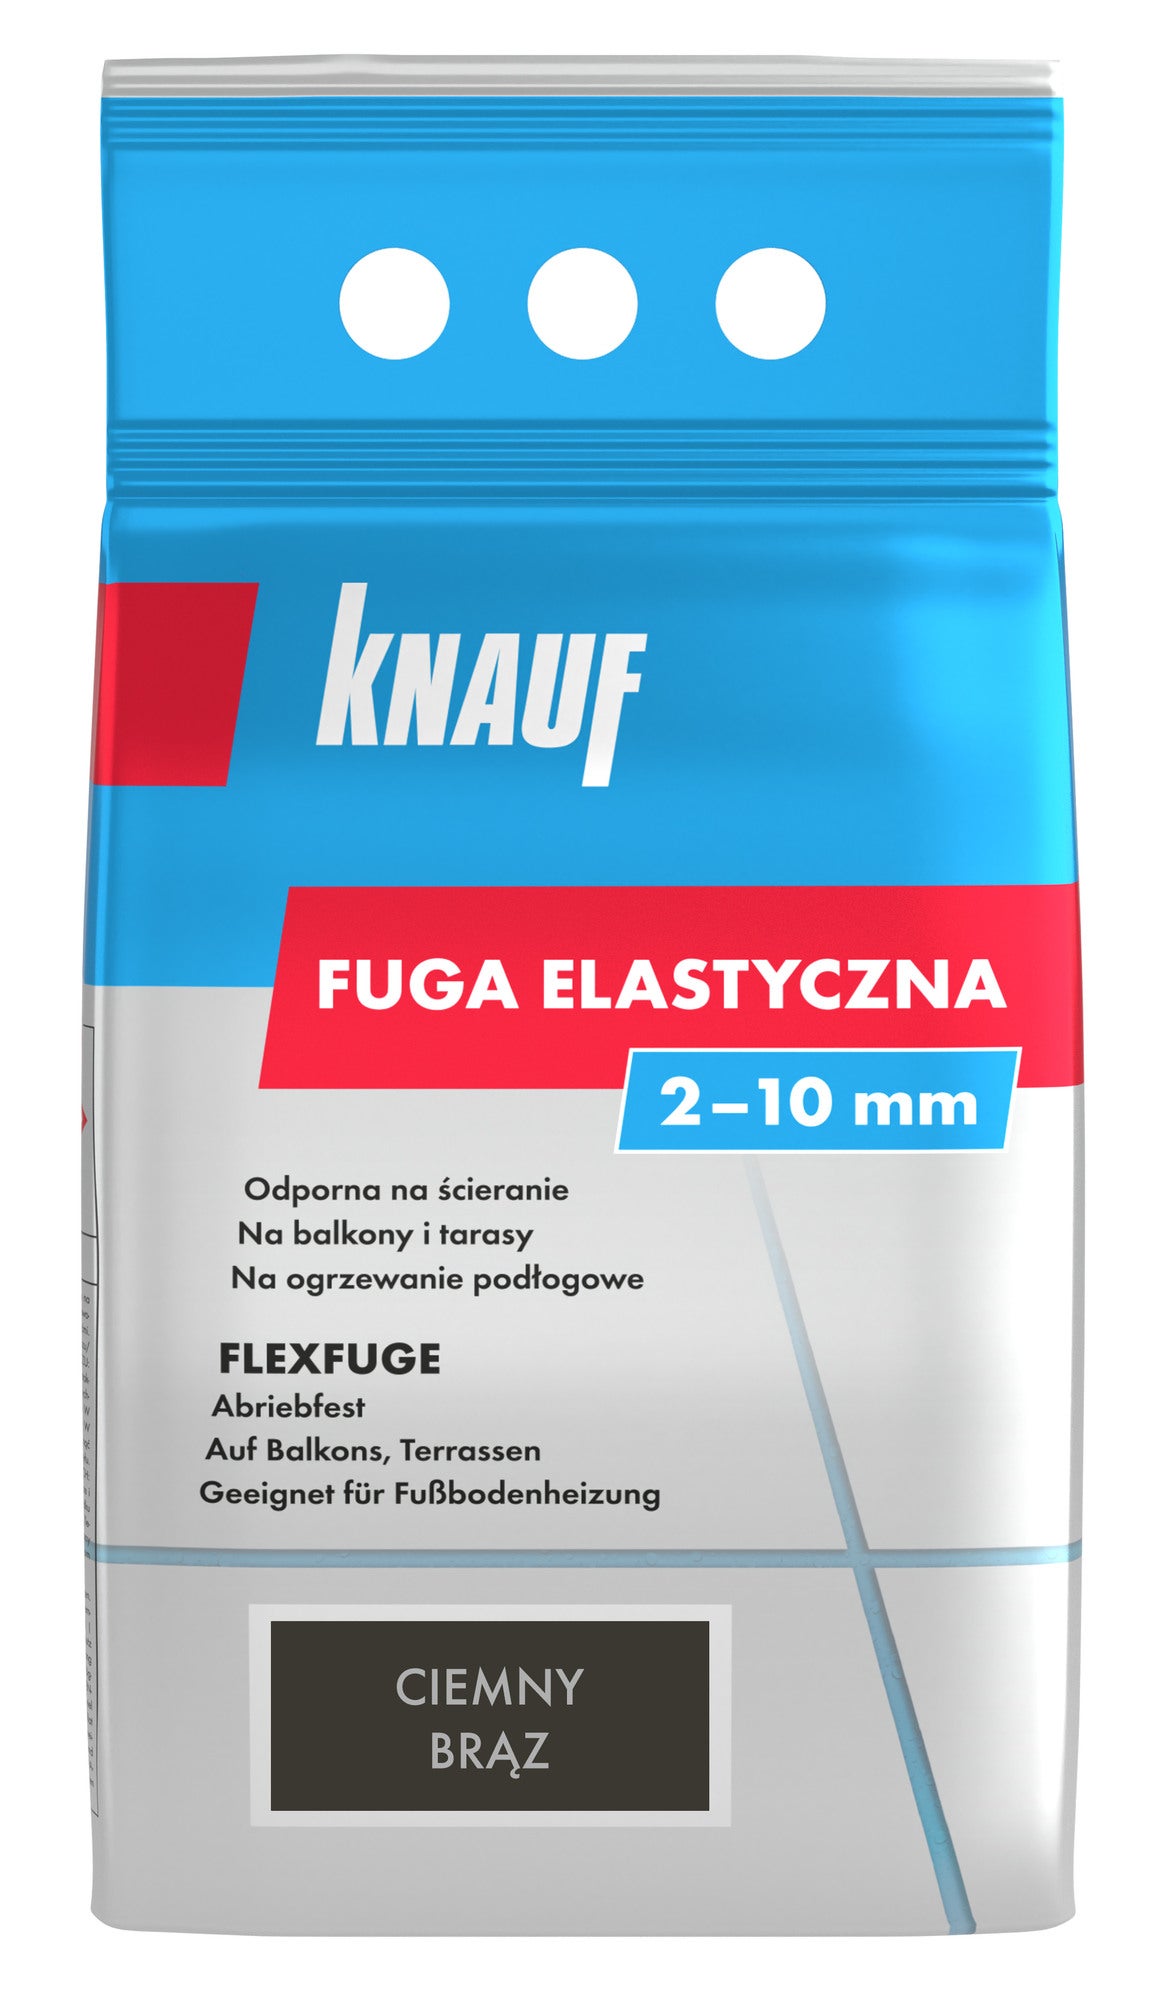 Фото - Герметик / рідкі цвяхи Knauf Fuga elastyczna  ciemny brąz 4 kg 